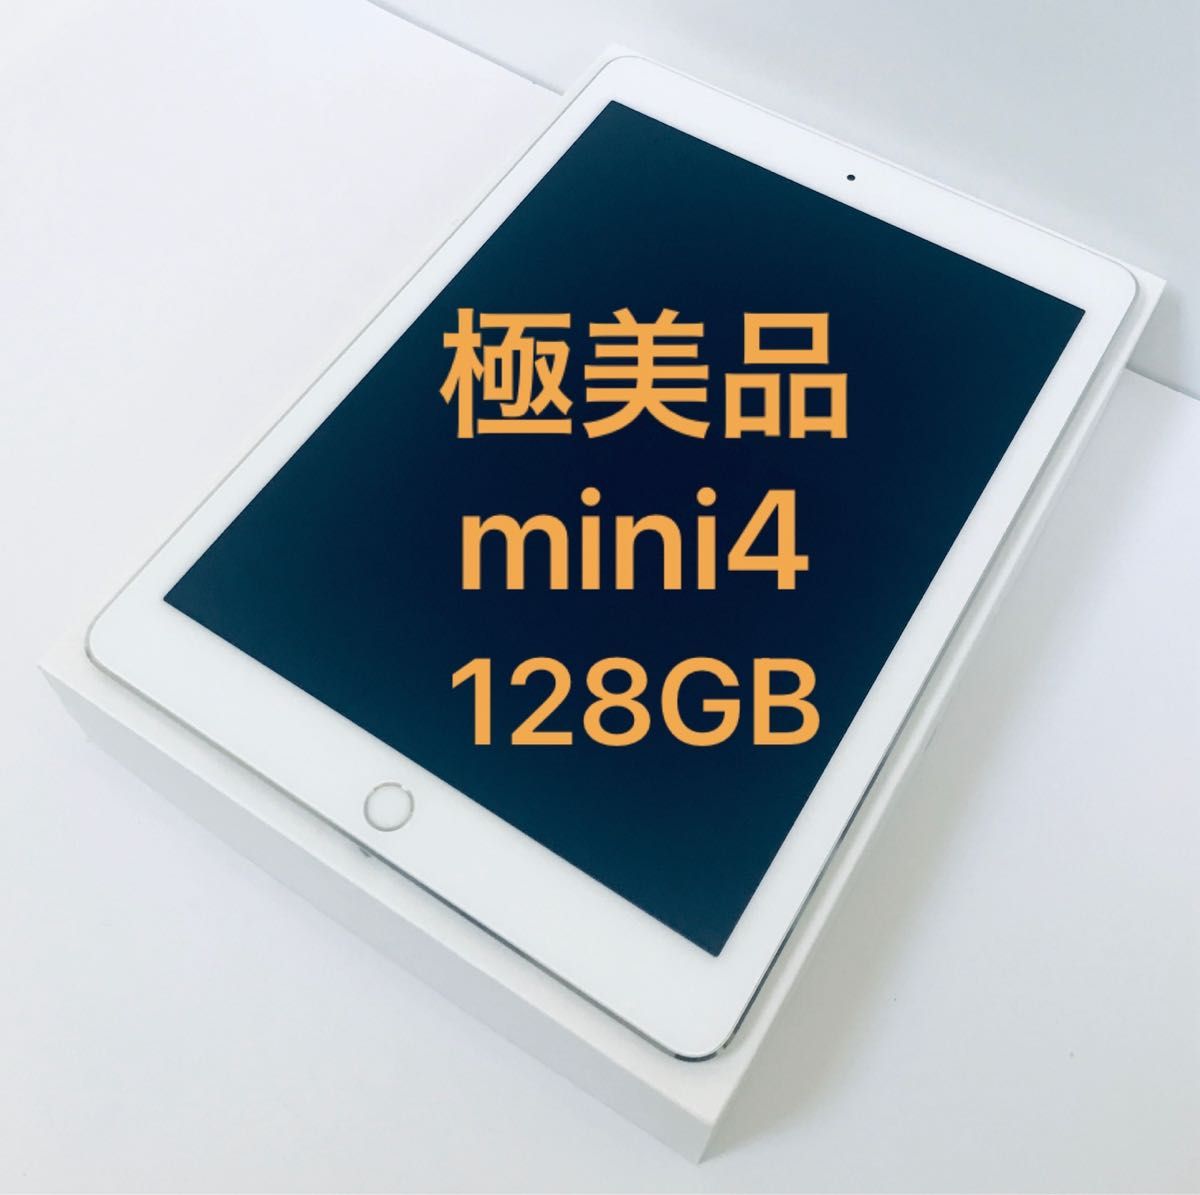 iPad mini4 32GB Wi-Fi＋Cellular SIMフリー 本体